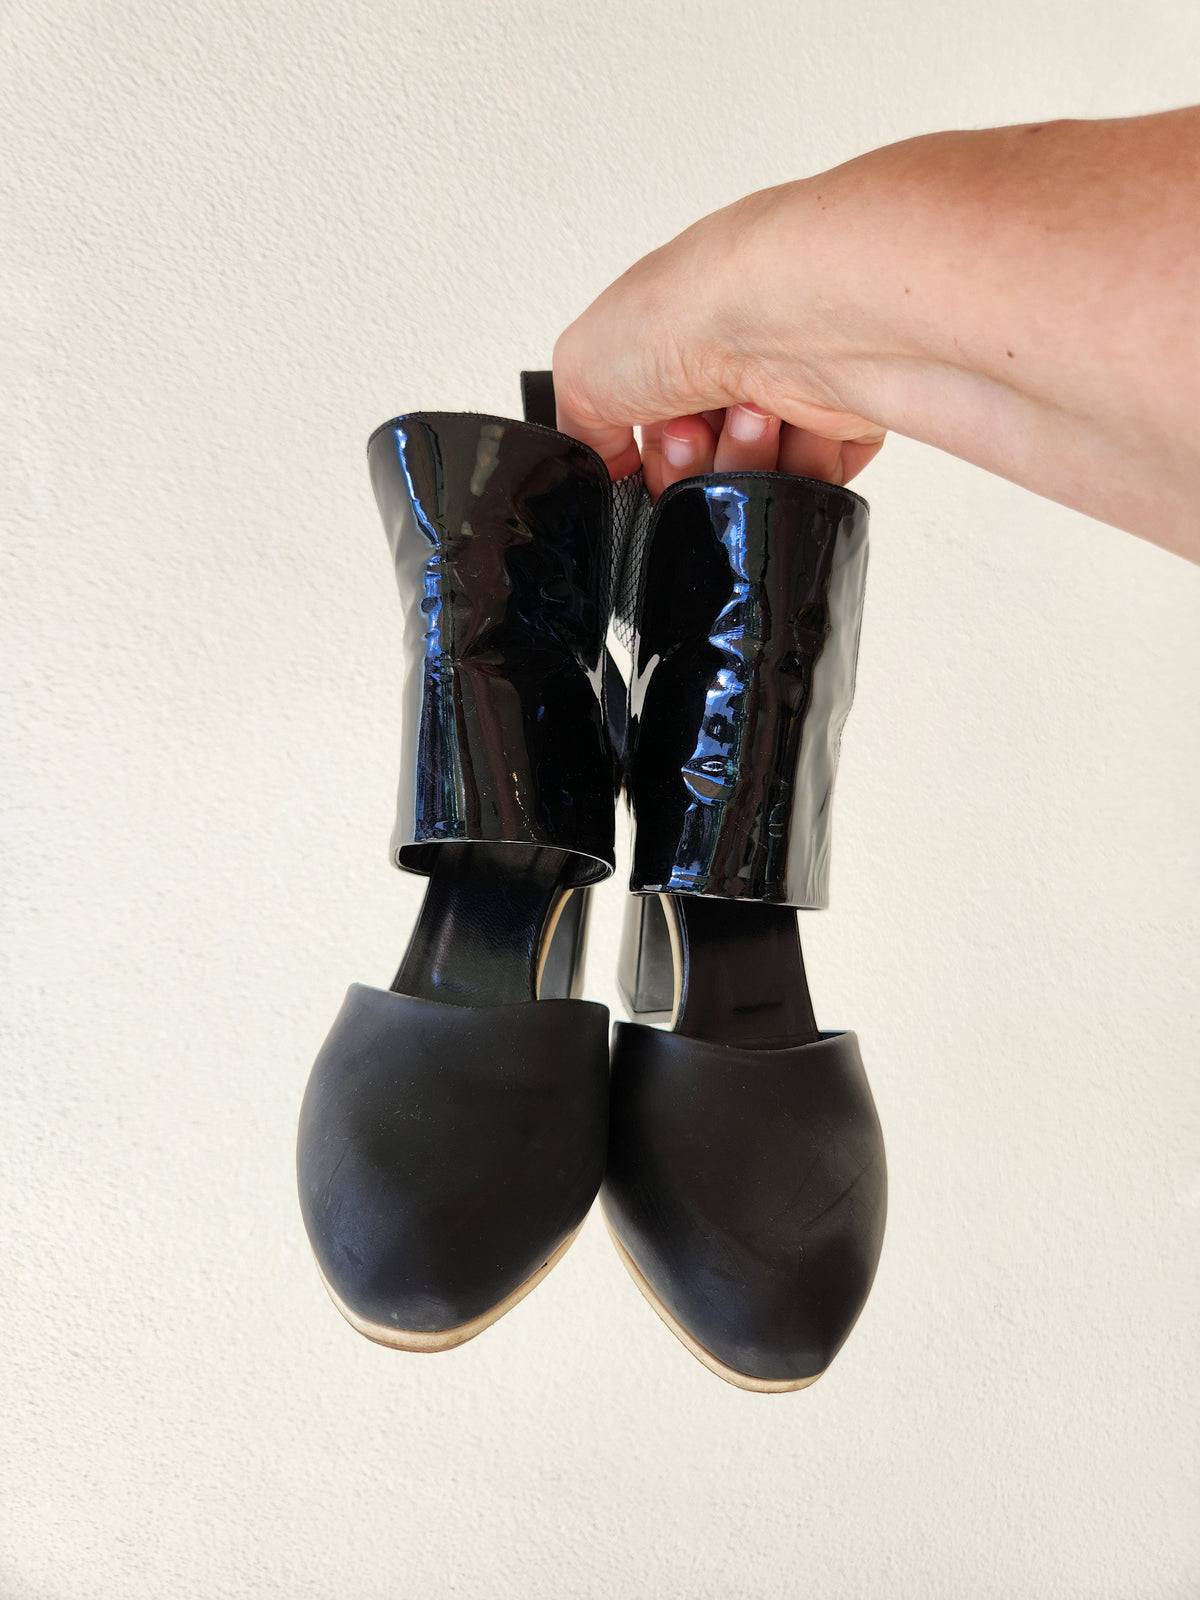 Beau Coops Black leather heels silver detail Footwear 37